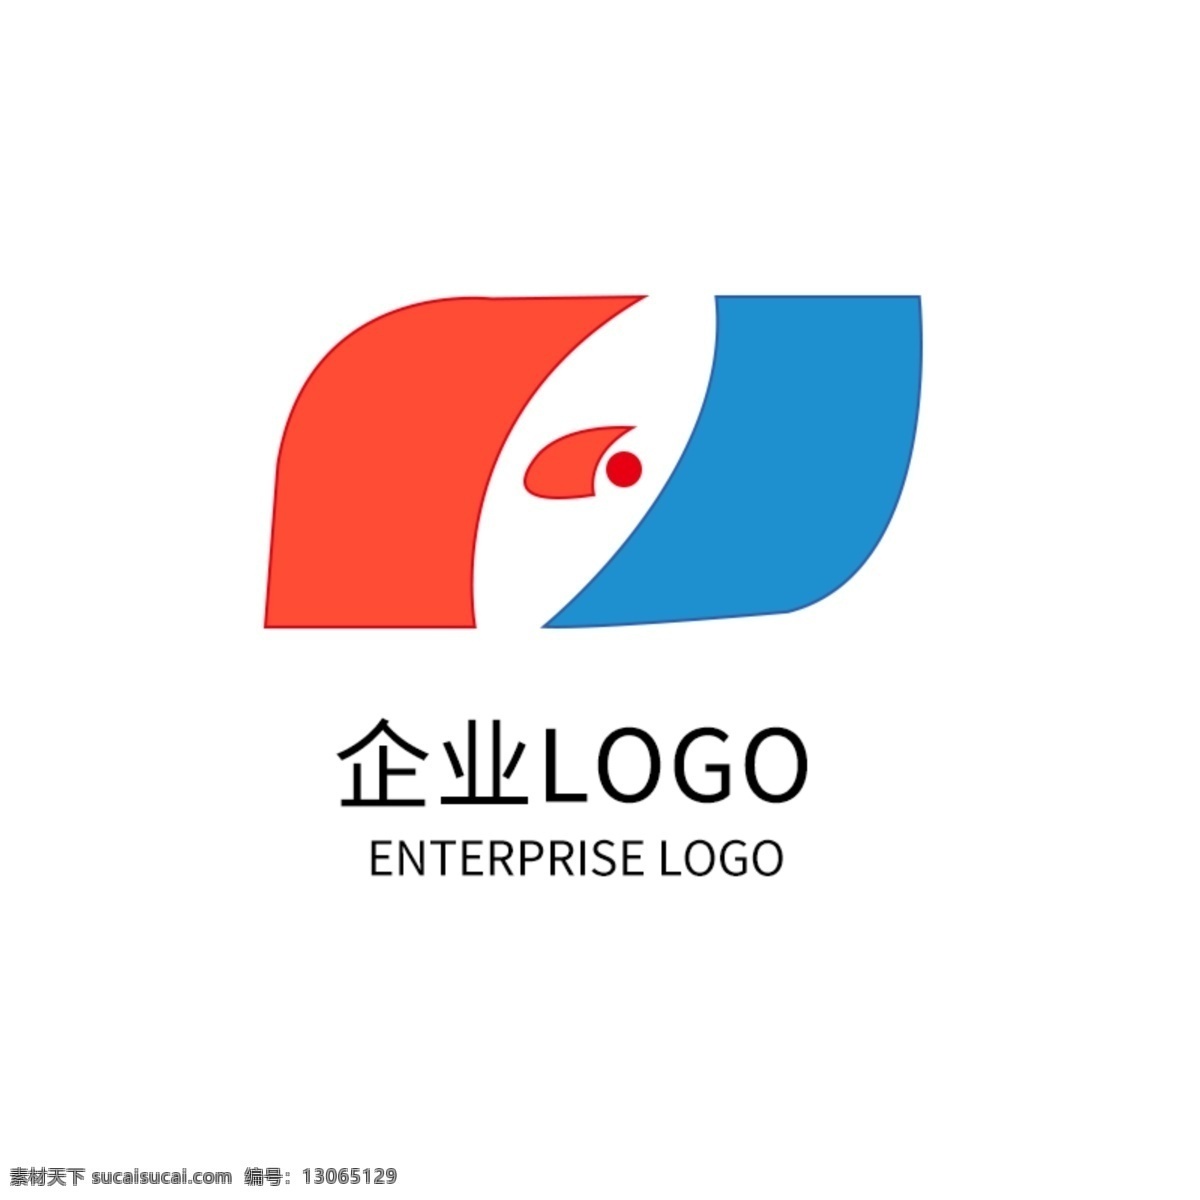 创意 企业 公司 logo 标志设计 全场 原创 企业logo 公司logo 公司标志设计 企业标志设计 logo设计